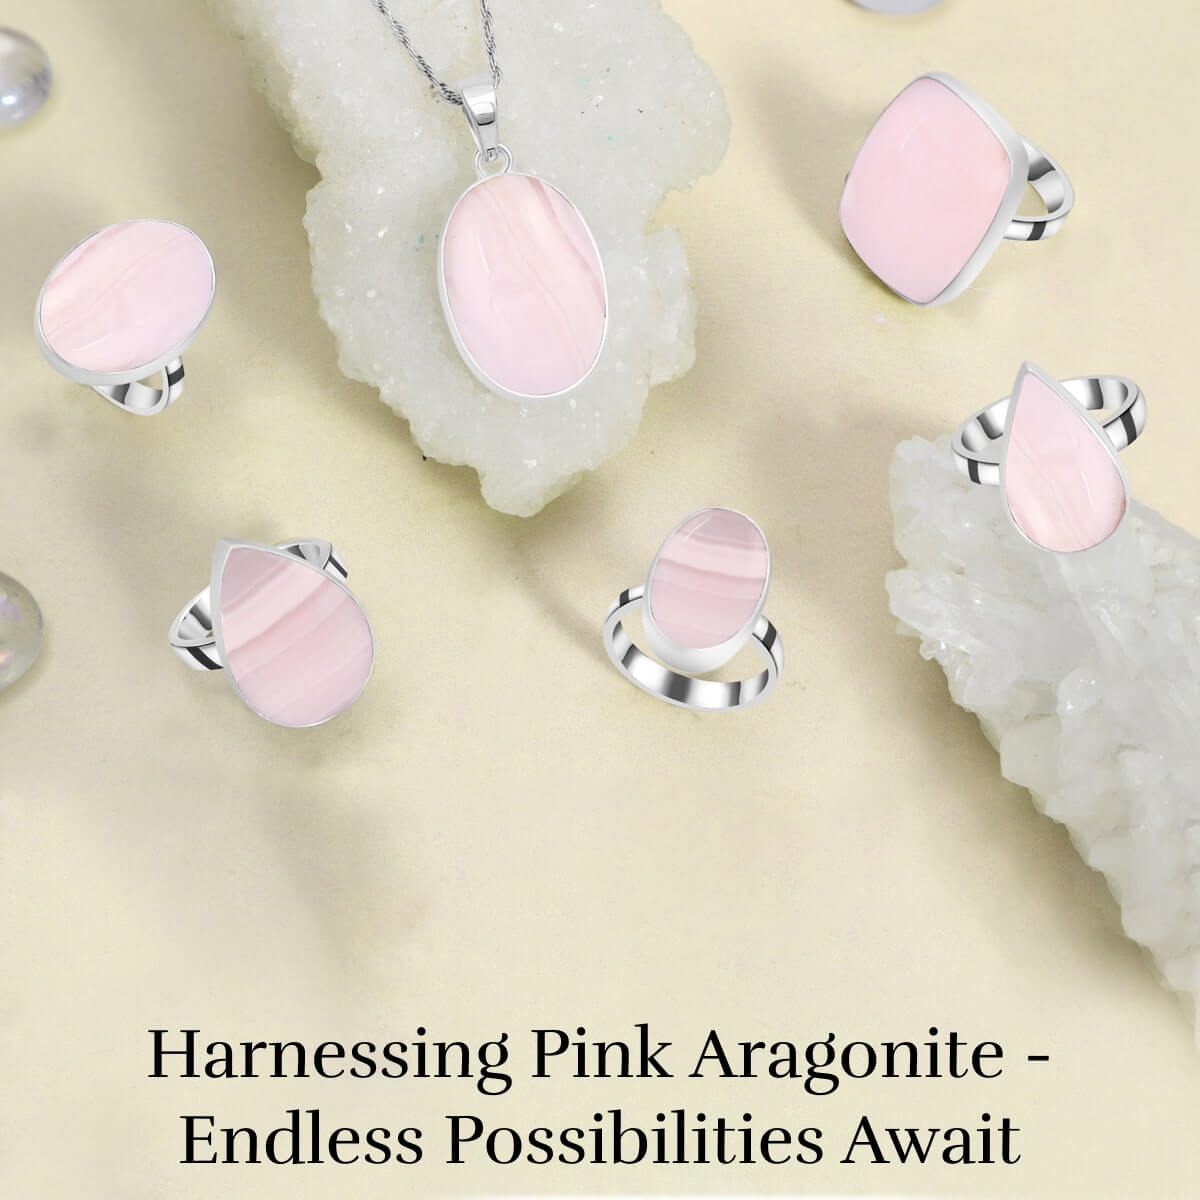 Pink Aragonite stone Usess